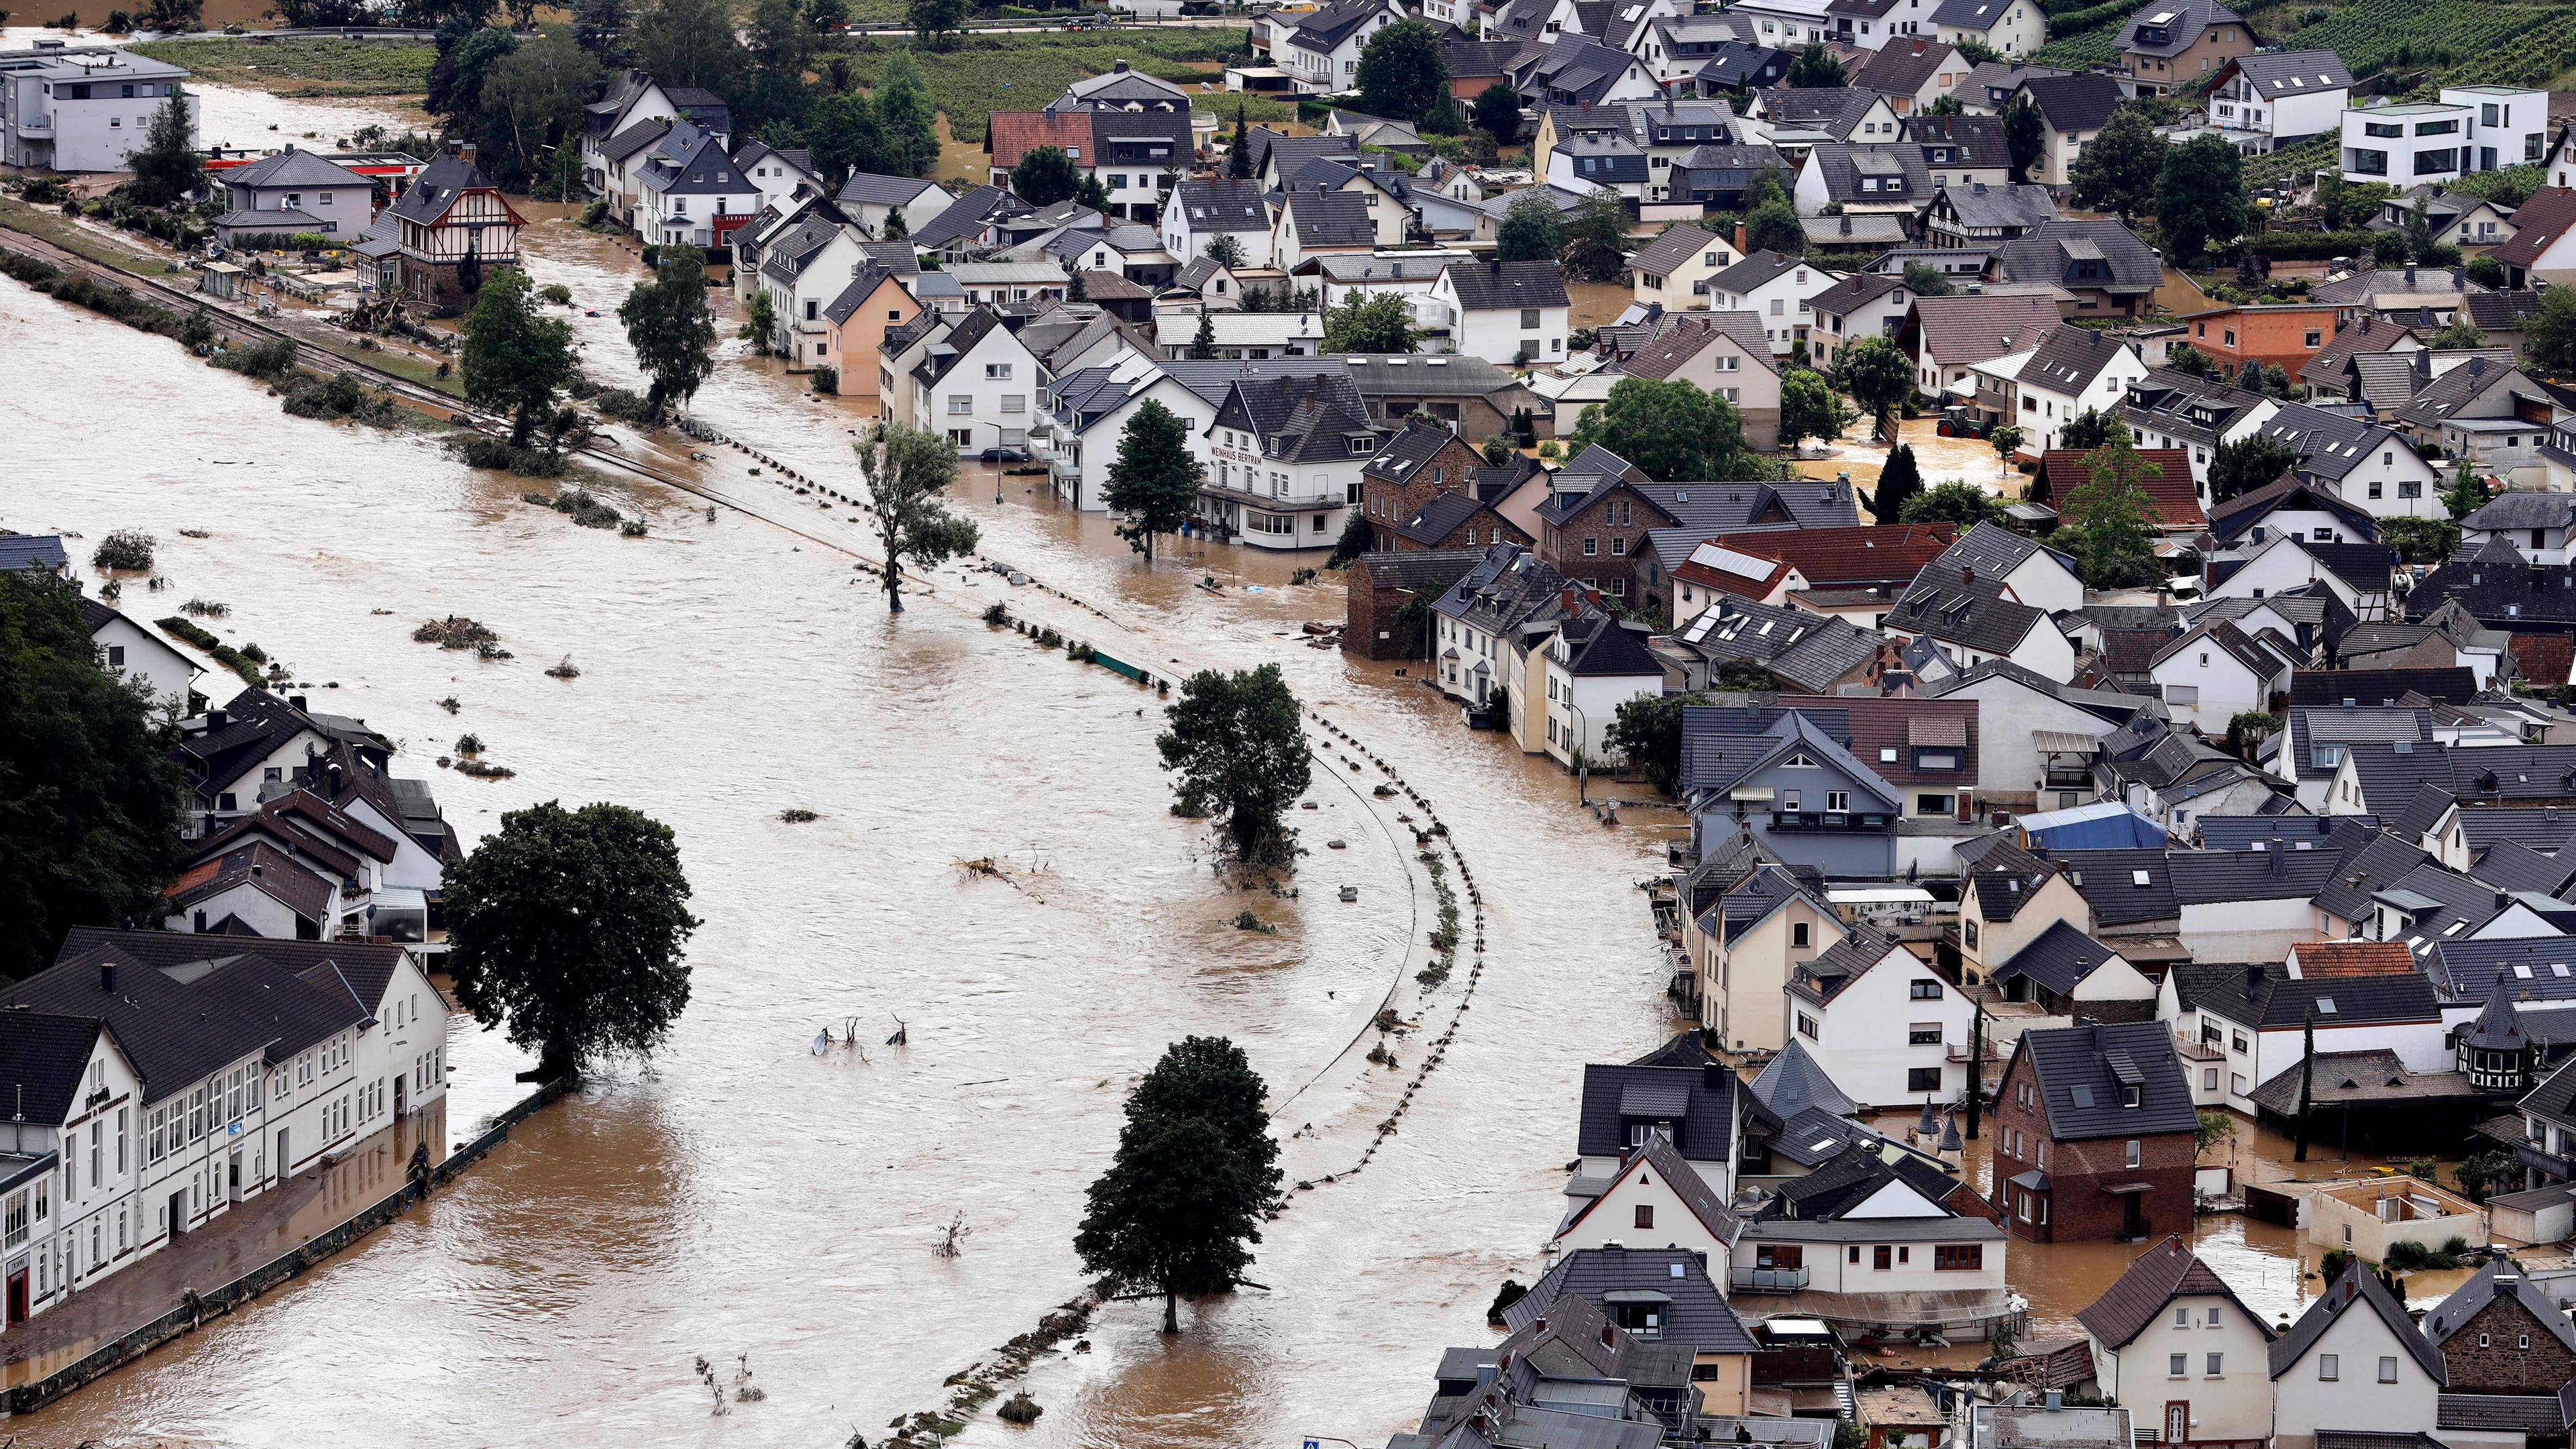 Archiv:In der Eifel haben heftige Regenfälle und Dauerregen für Überschwemmungen und Überflutungen gesorgt. Im Ahrtal trat der Fluss vielerorts über die Ufer und überschwemmte nicht nur Keller sondern ganze Ortschaften.